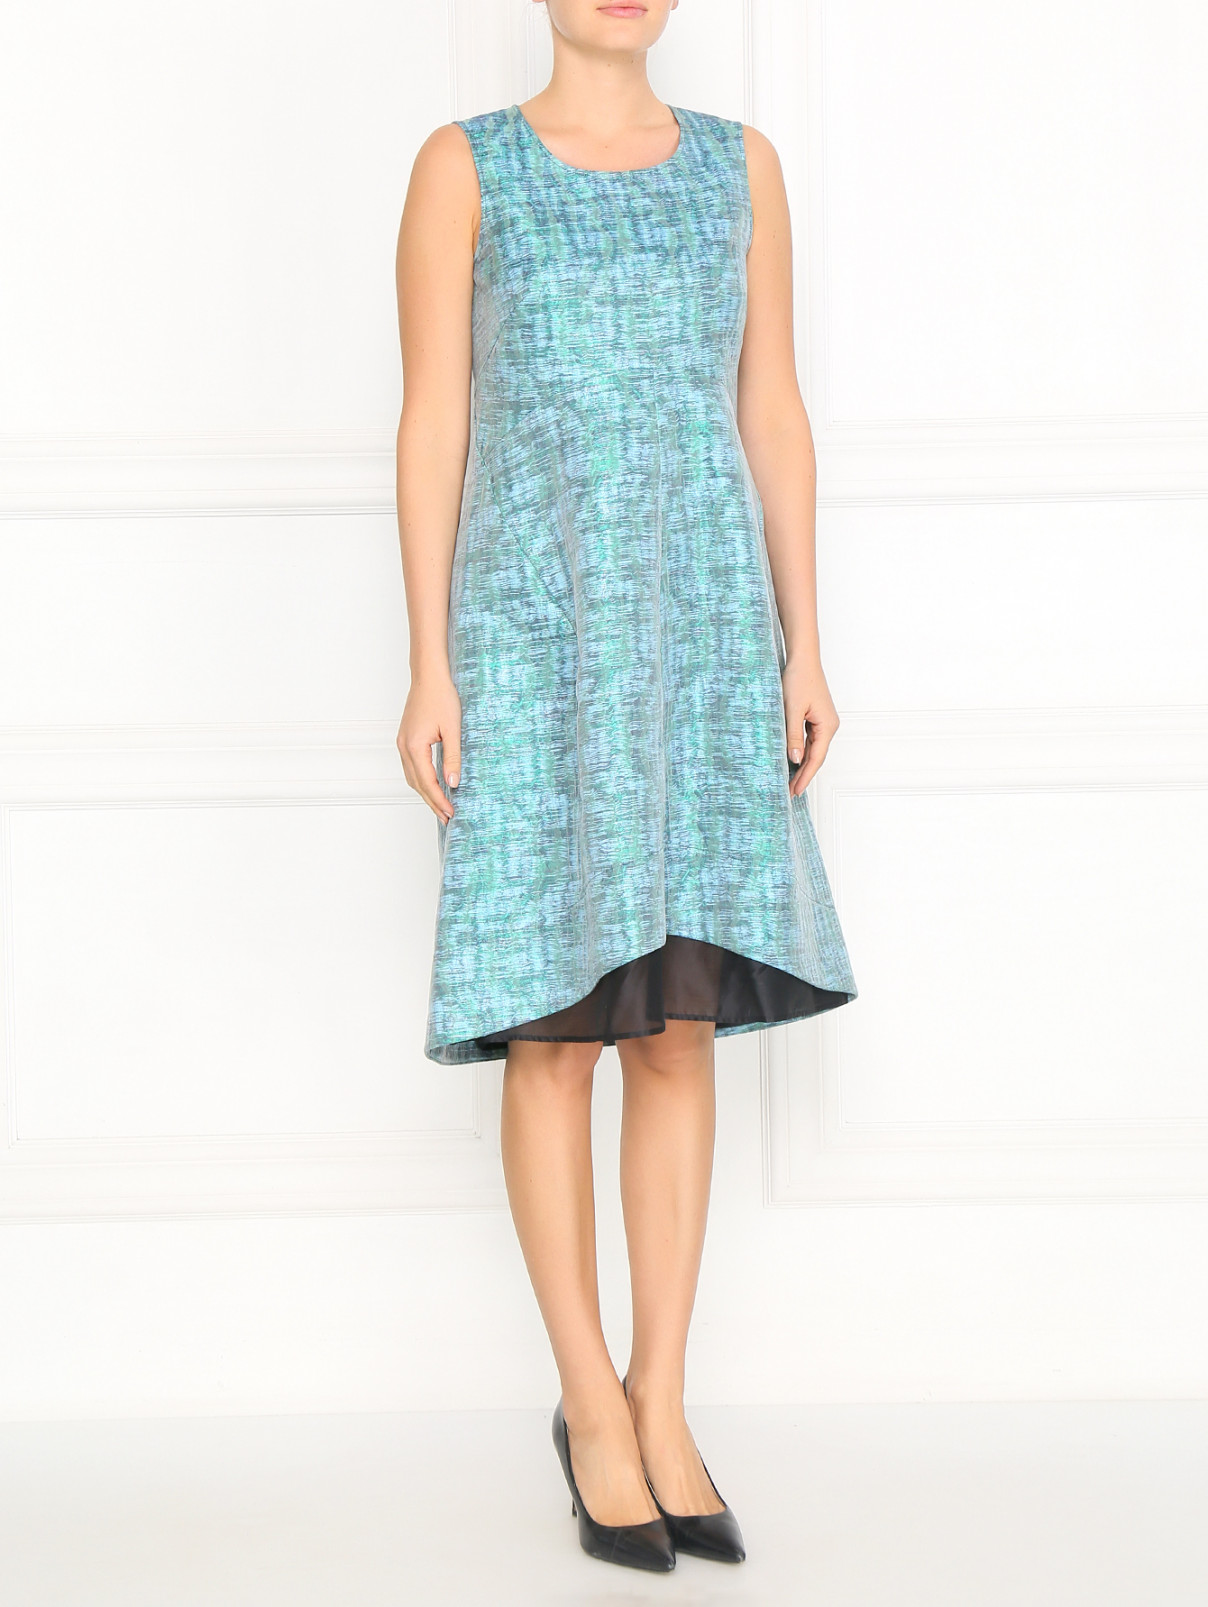 Платье свободного фасона с узором Jil Sander  –  Модель Общий вид  – Цвет:  Синий